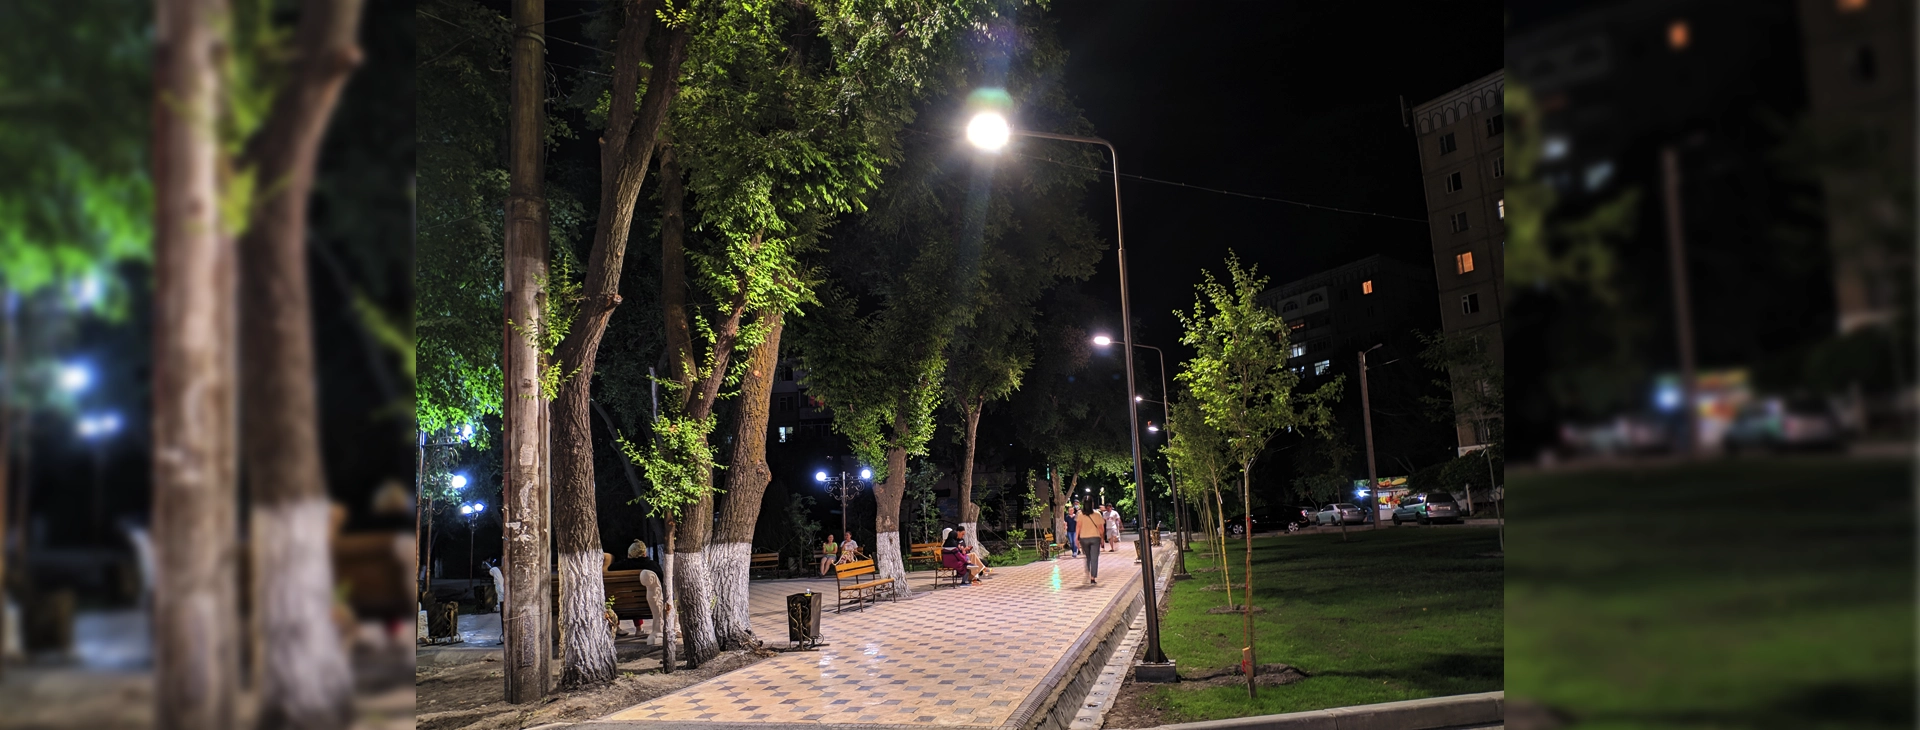 Работы по освещению сквера в 6-м мкр. г. Бишкек